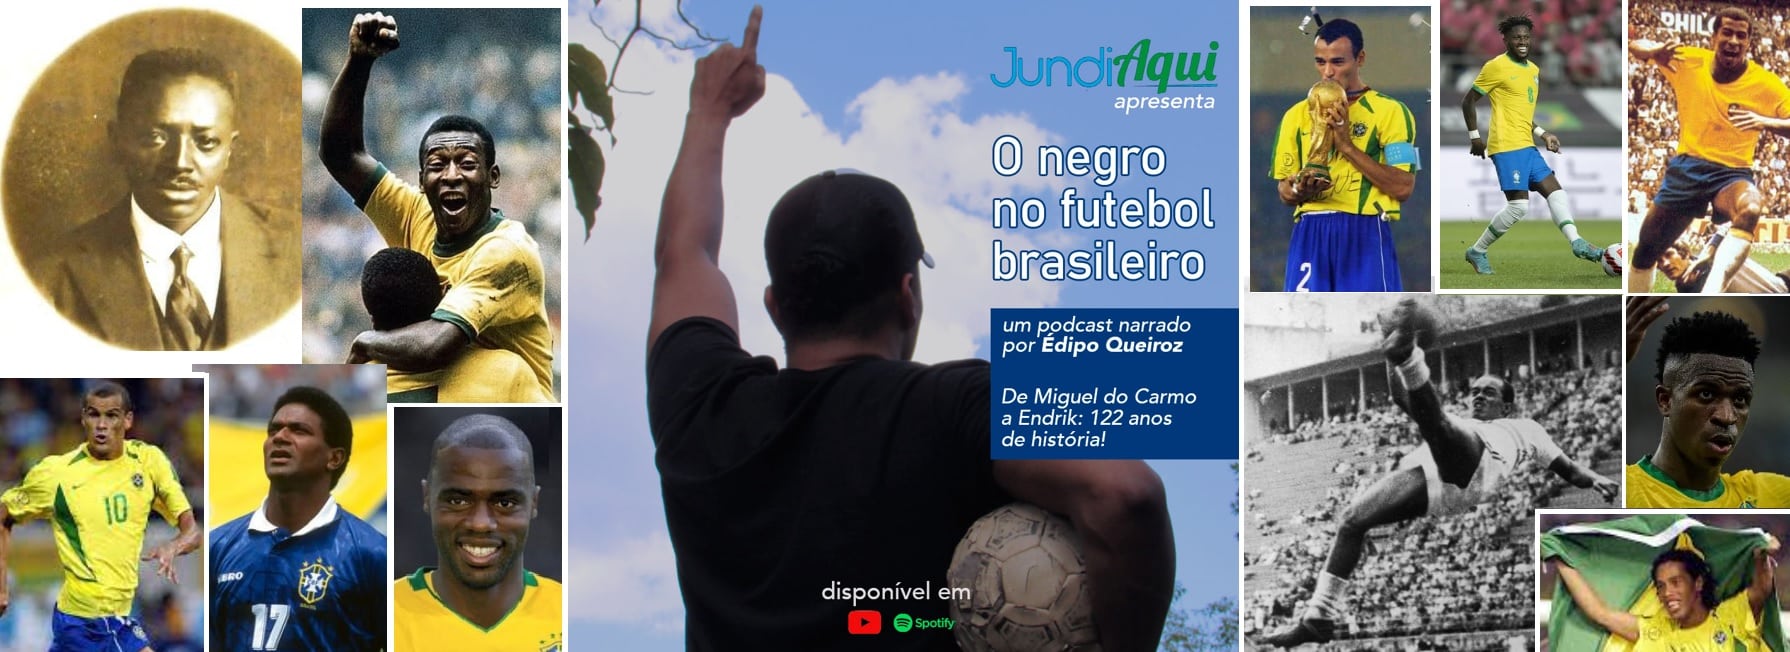  JundiAqui estreia podcast e traz a história do negro no futebol brasileiro